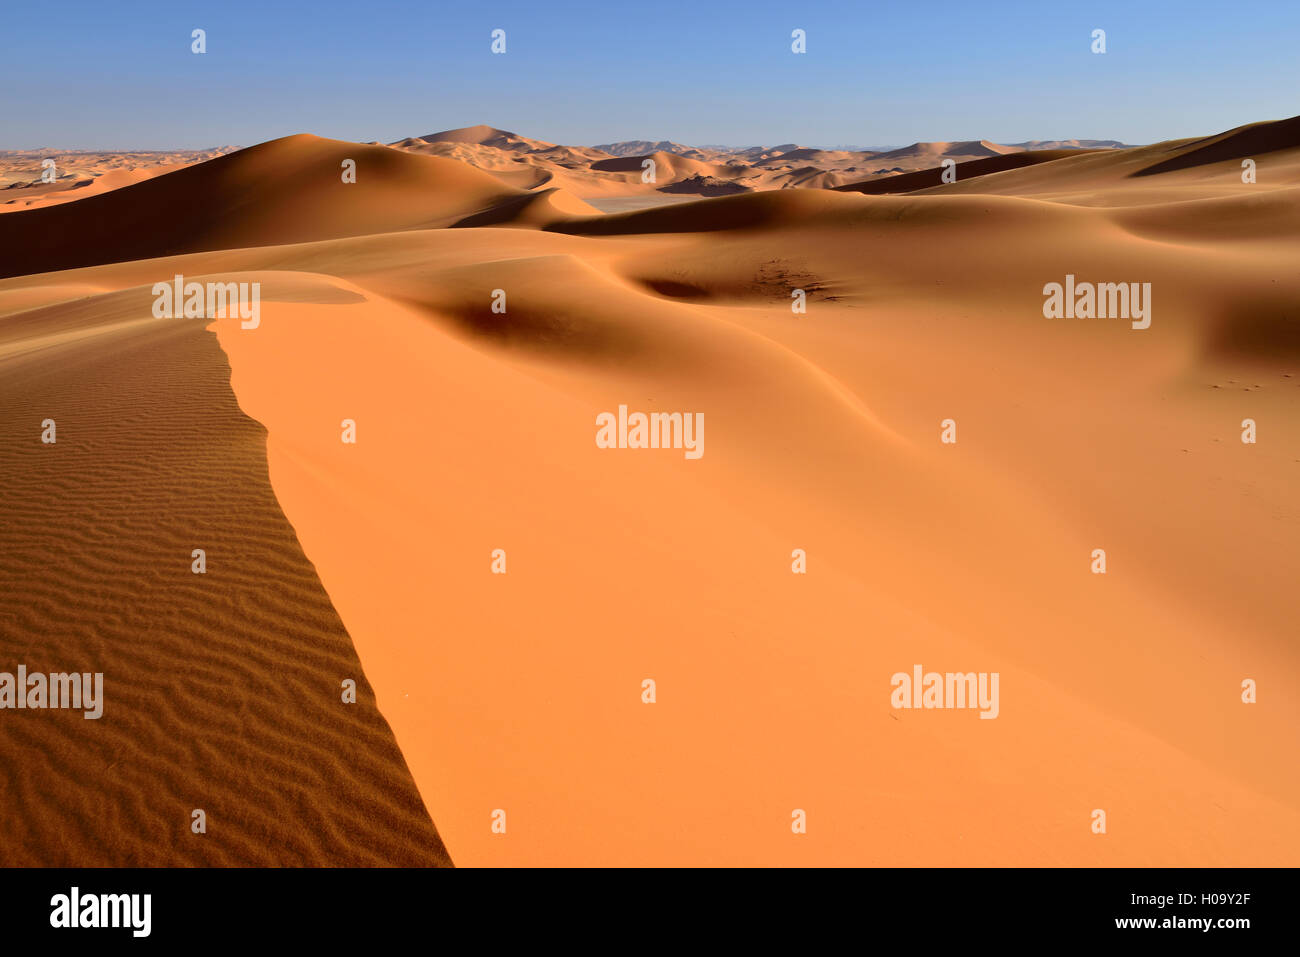 Sand dunes of In Tehak, Tadrart, Tassili n'Ajjer National Park, UNESCO World Heritage Site, Sahara desert, Algeria Stock Photo